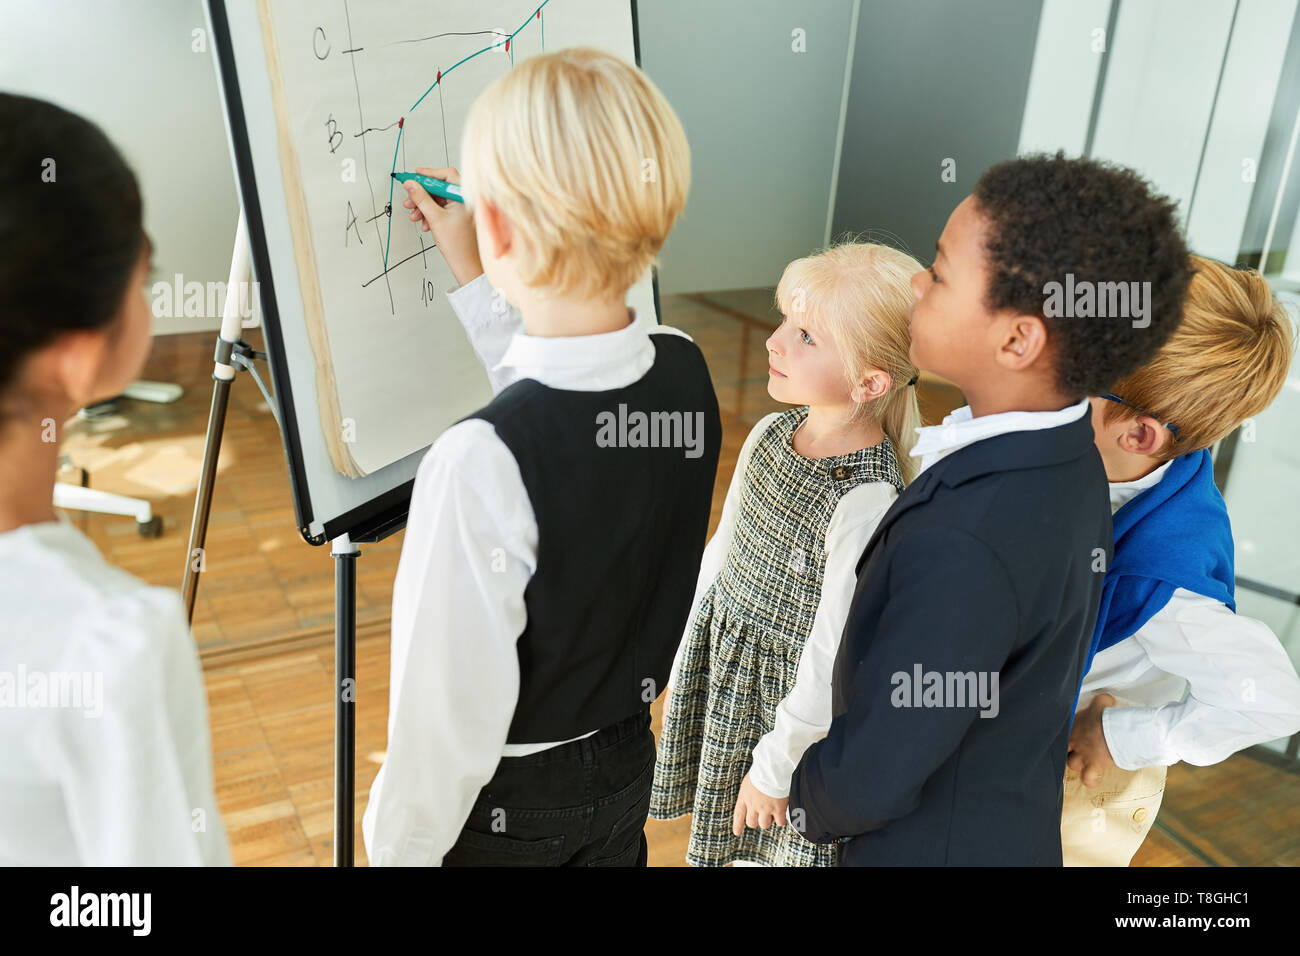 Kinder Verkleidung als Unternehmer bei einer Präsentation auf dem Whiteboard im Büro Stockfoto